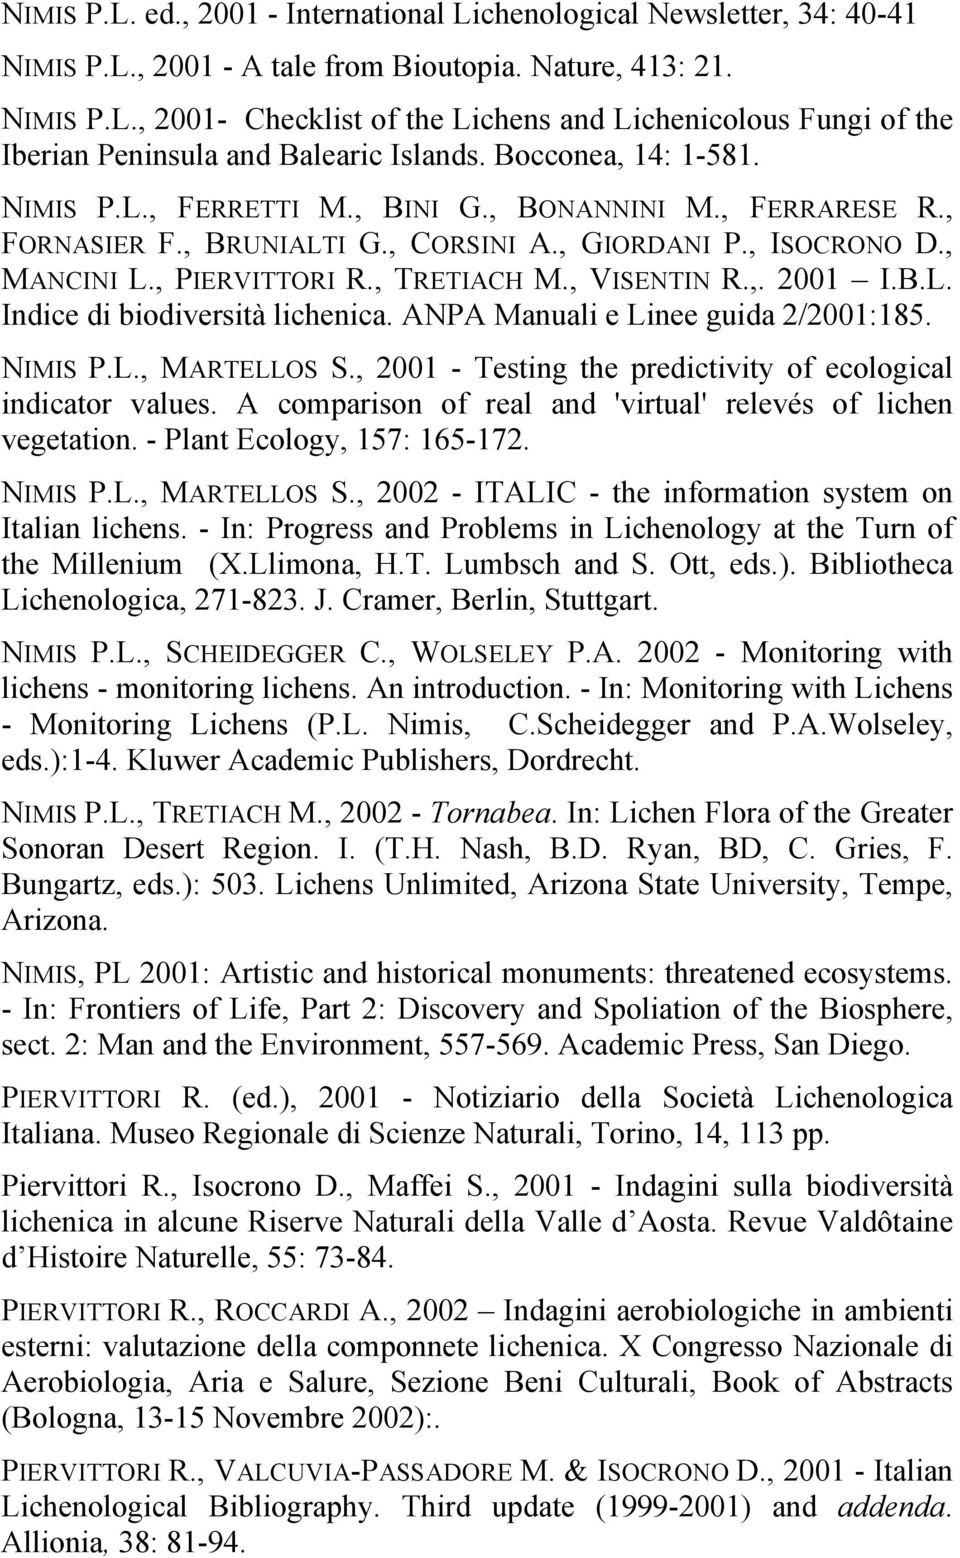 , VISENTIN R.,. 2001 I.B.L. Indice di biodiversità lichenica. ANPA Manuali e Linee guida 2/2001:185. NIMIS P.L., MARTELLOS S., 2001 - Testing the predictivity of ecological indicator values.